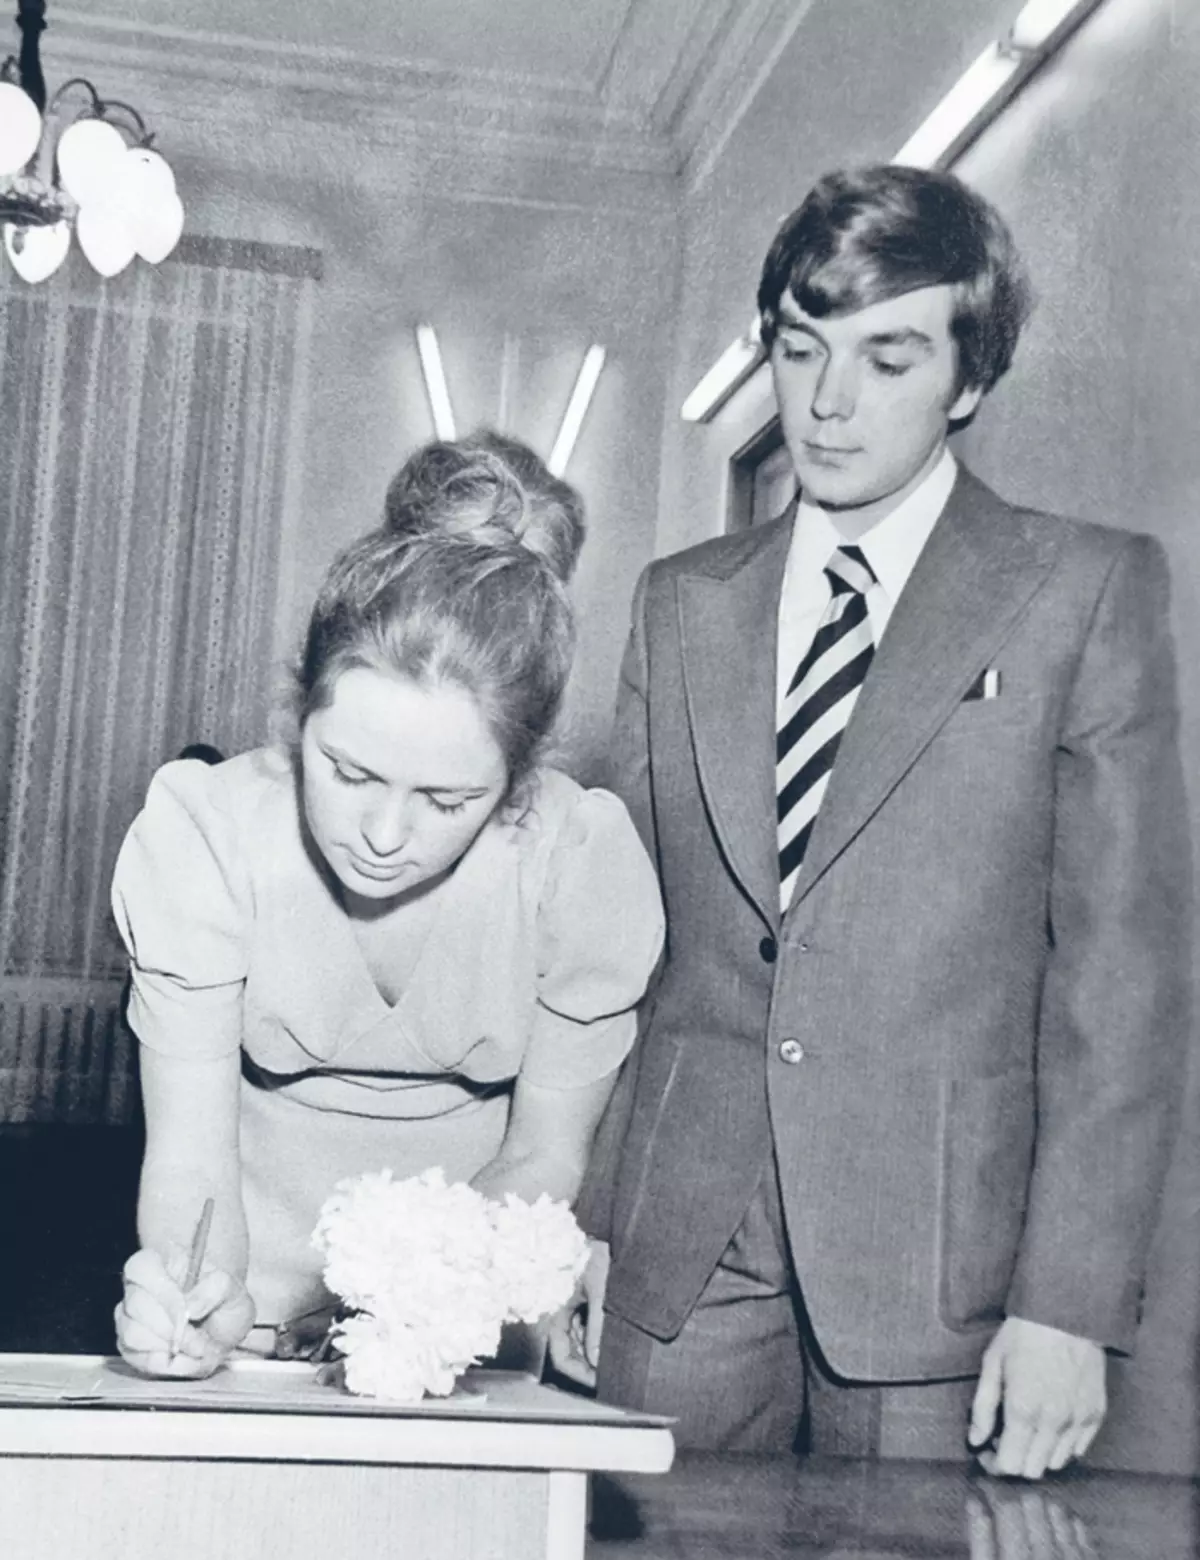 Ο Γιούρι και η Eleanor συναντήθηκαν περισσότεροι έφηβοι, και ο σύζυγός της και η σύζυγός της έγινε την άνοιξη του 1975